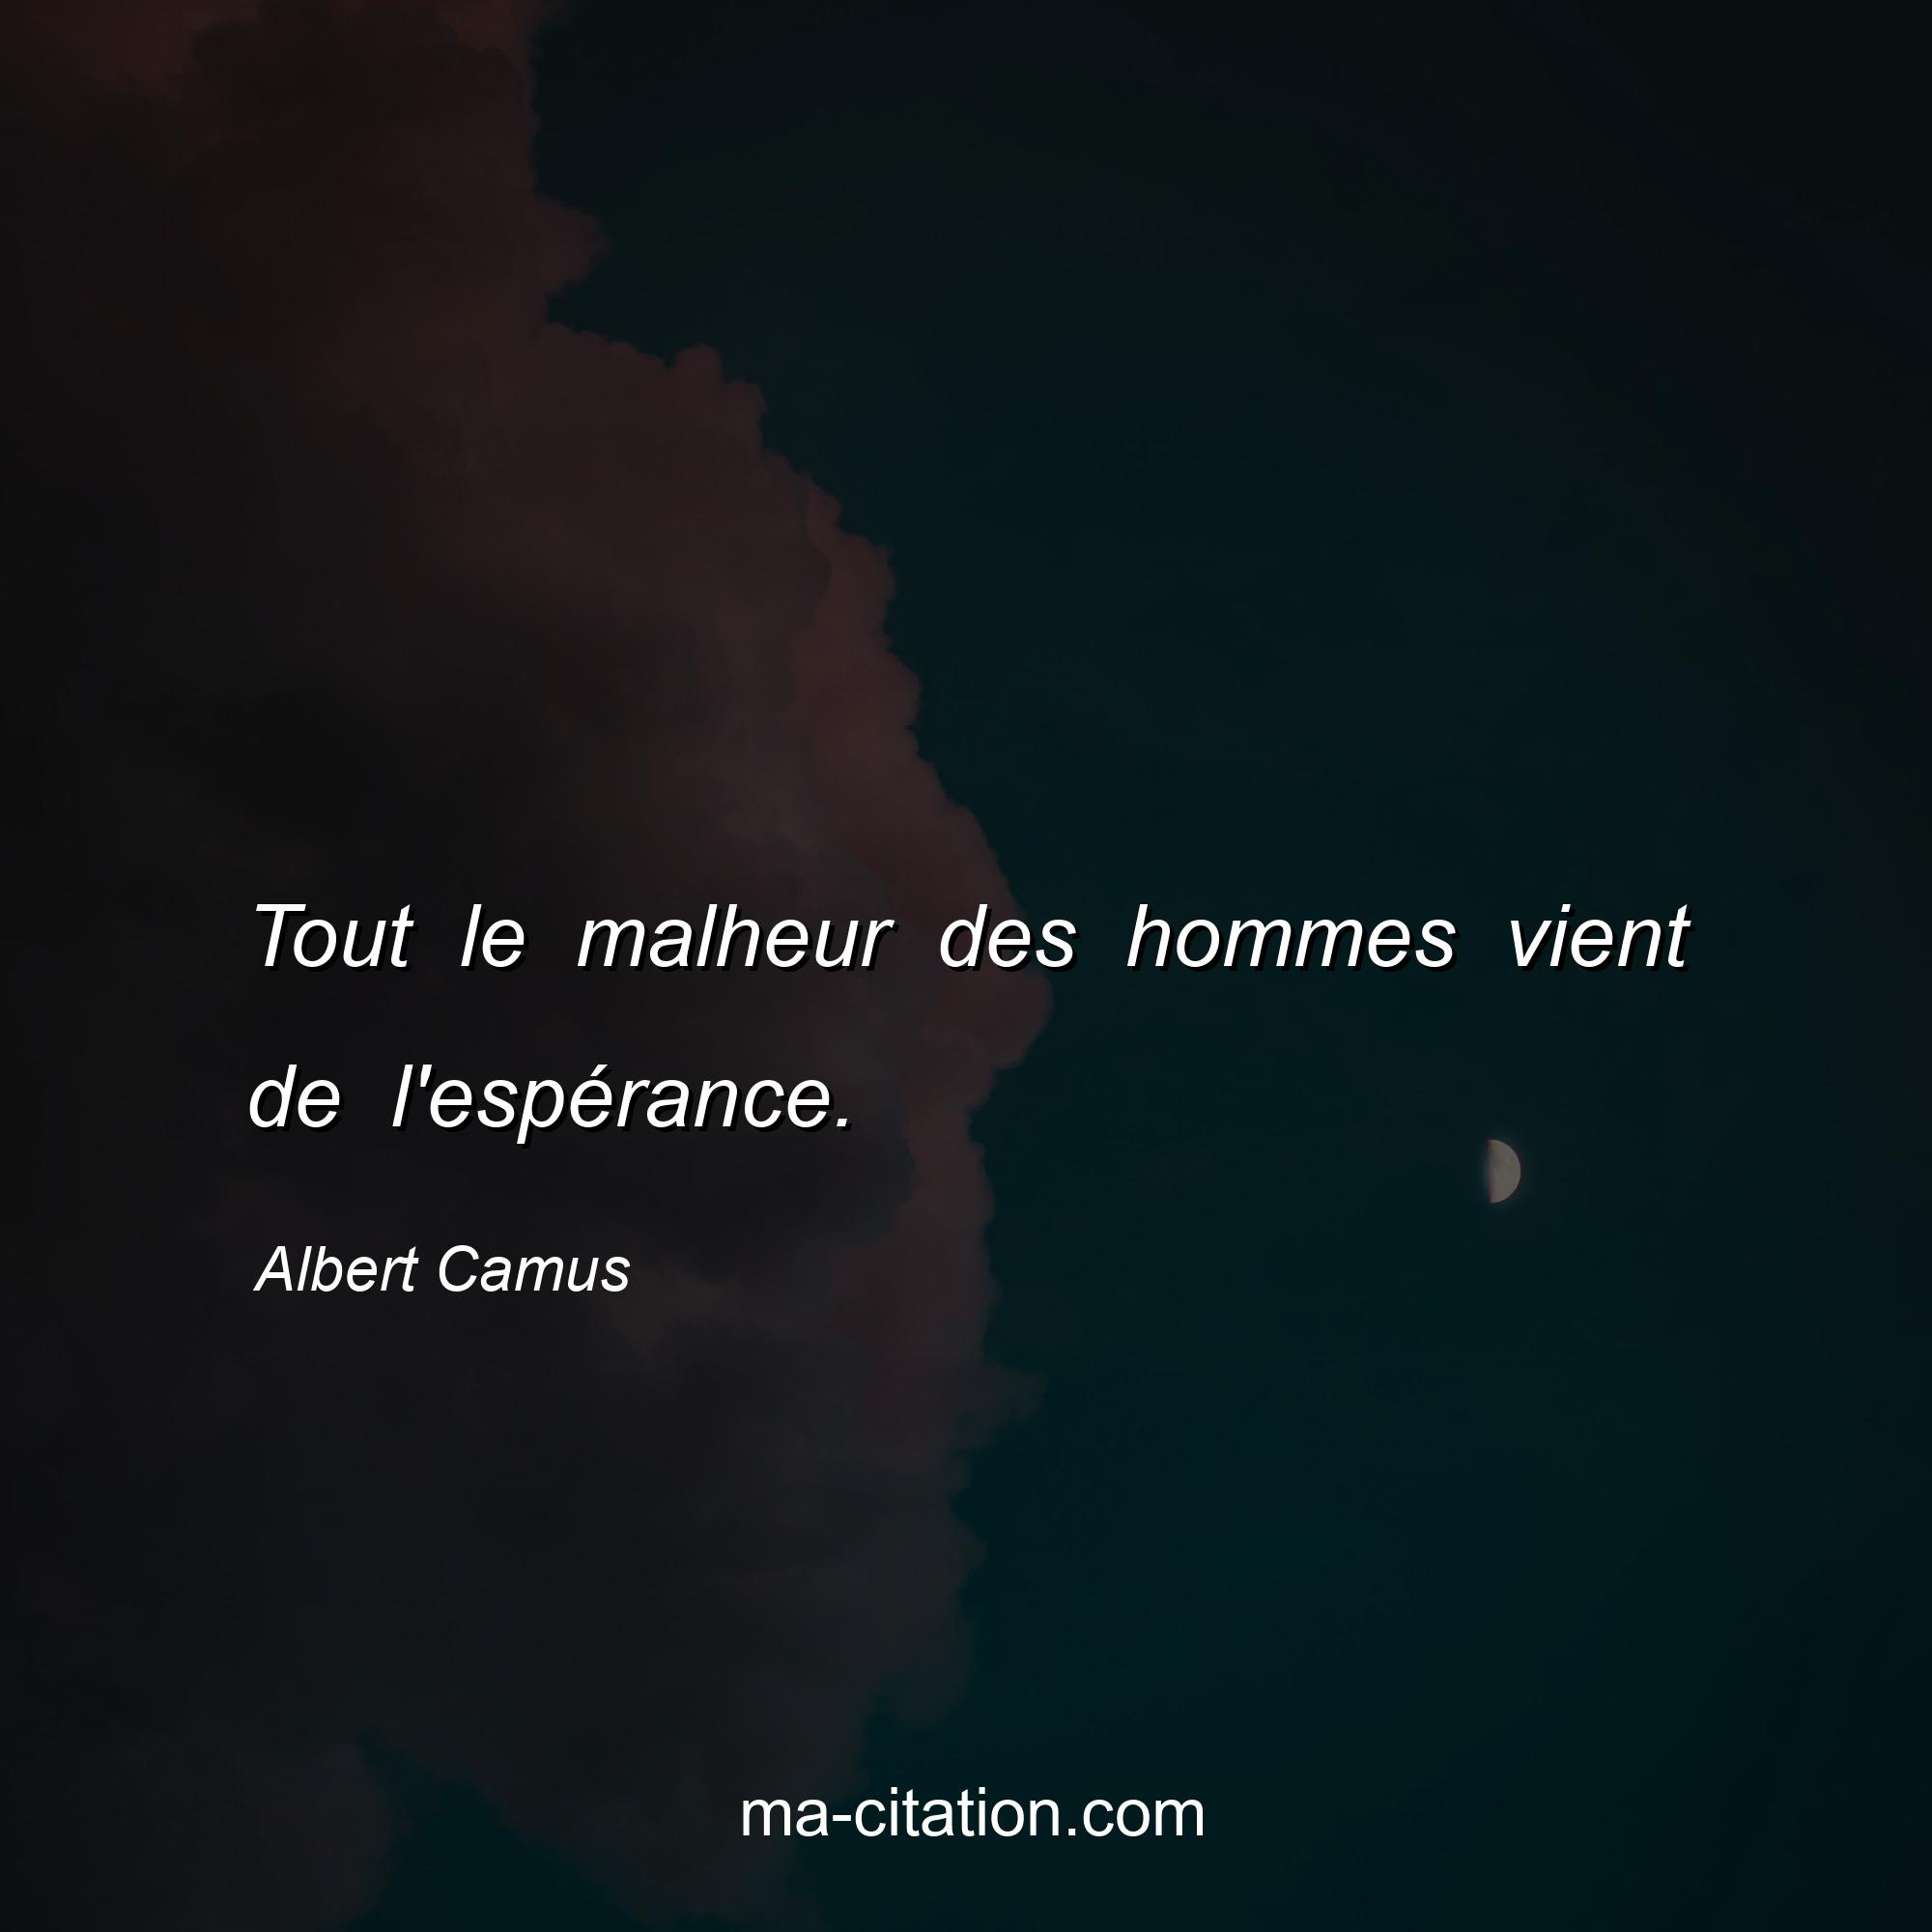 Albert Camus : Tout le malheur des hommes vient de l'espérance.